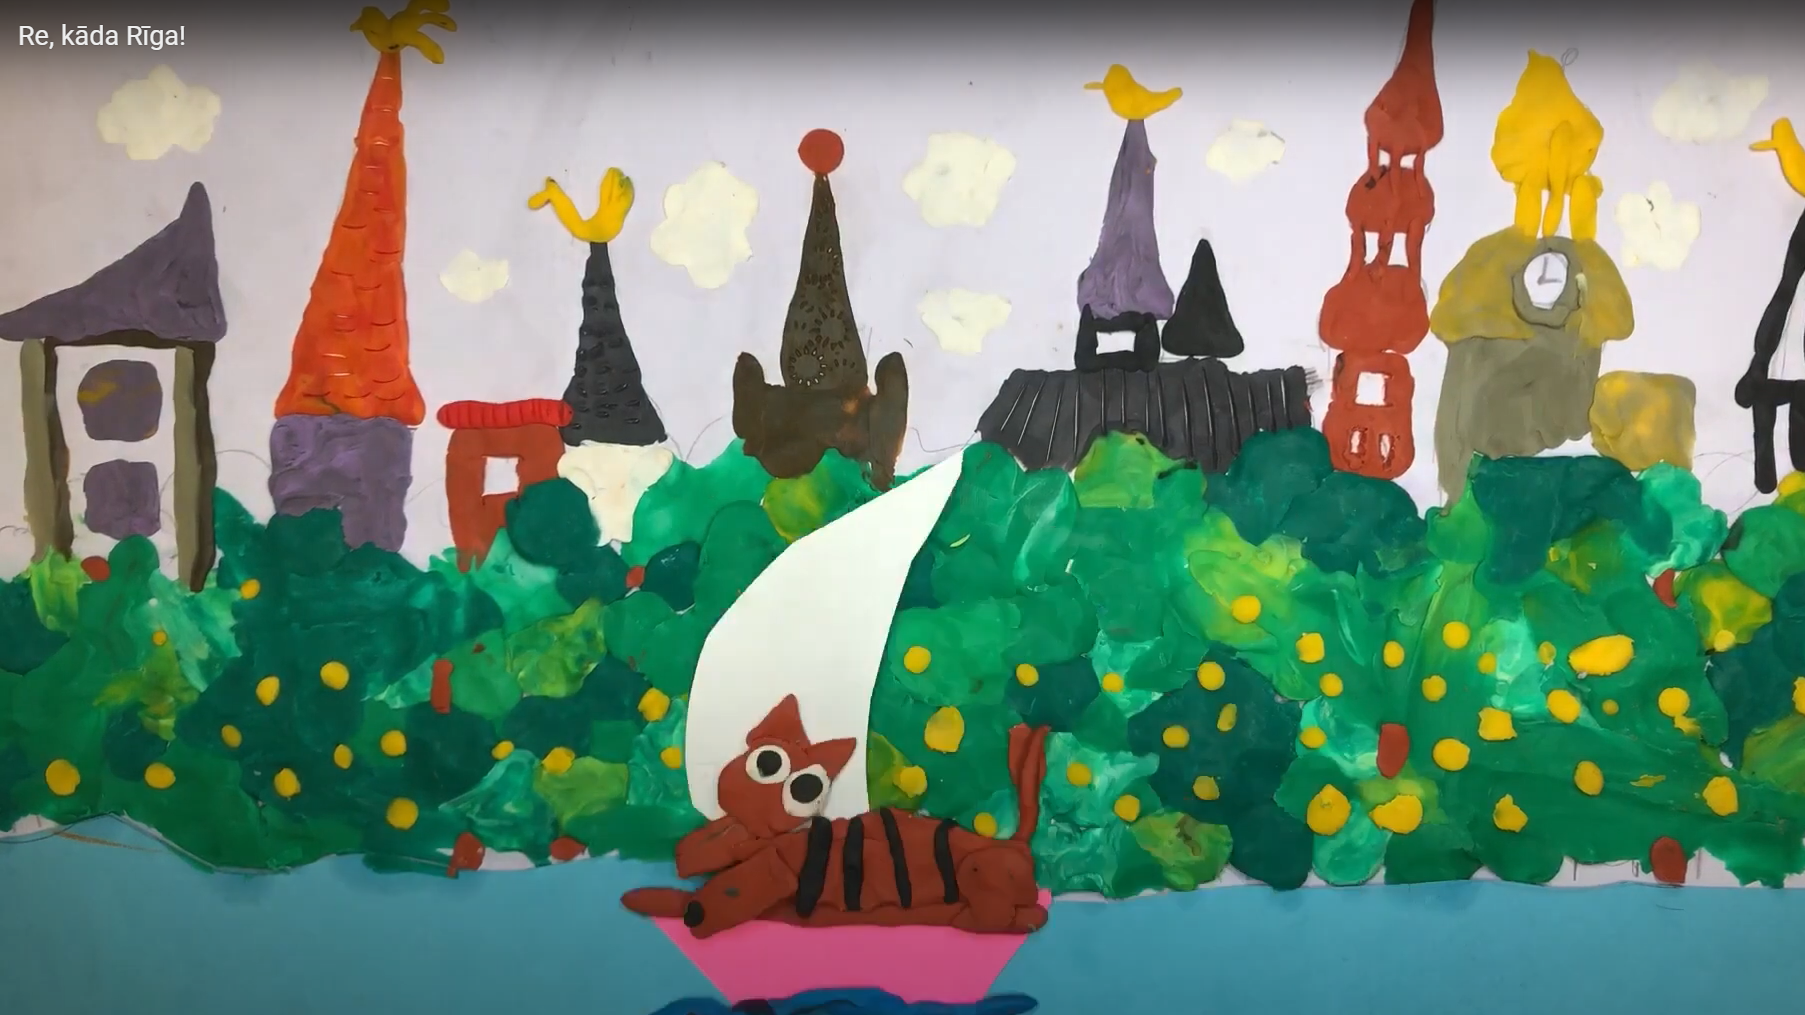 Audzēkņu kopīgiem spēkiem radīta animācijas filmiņa "Re, kāda Rīga"